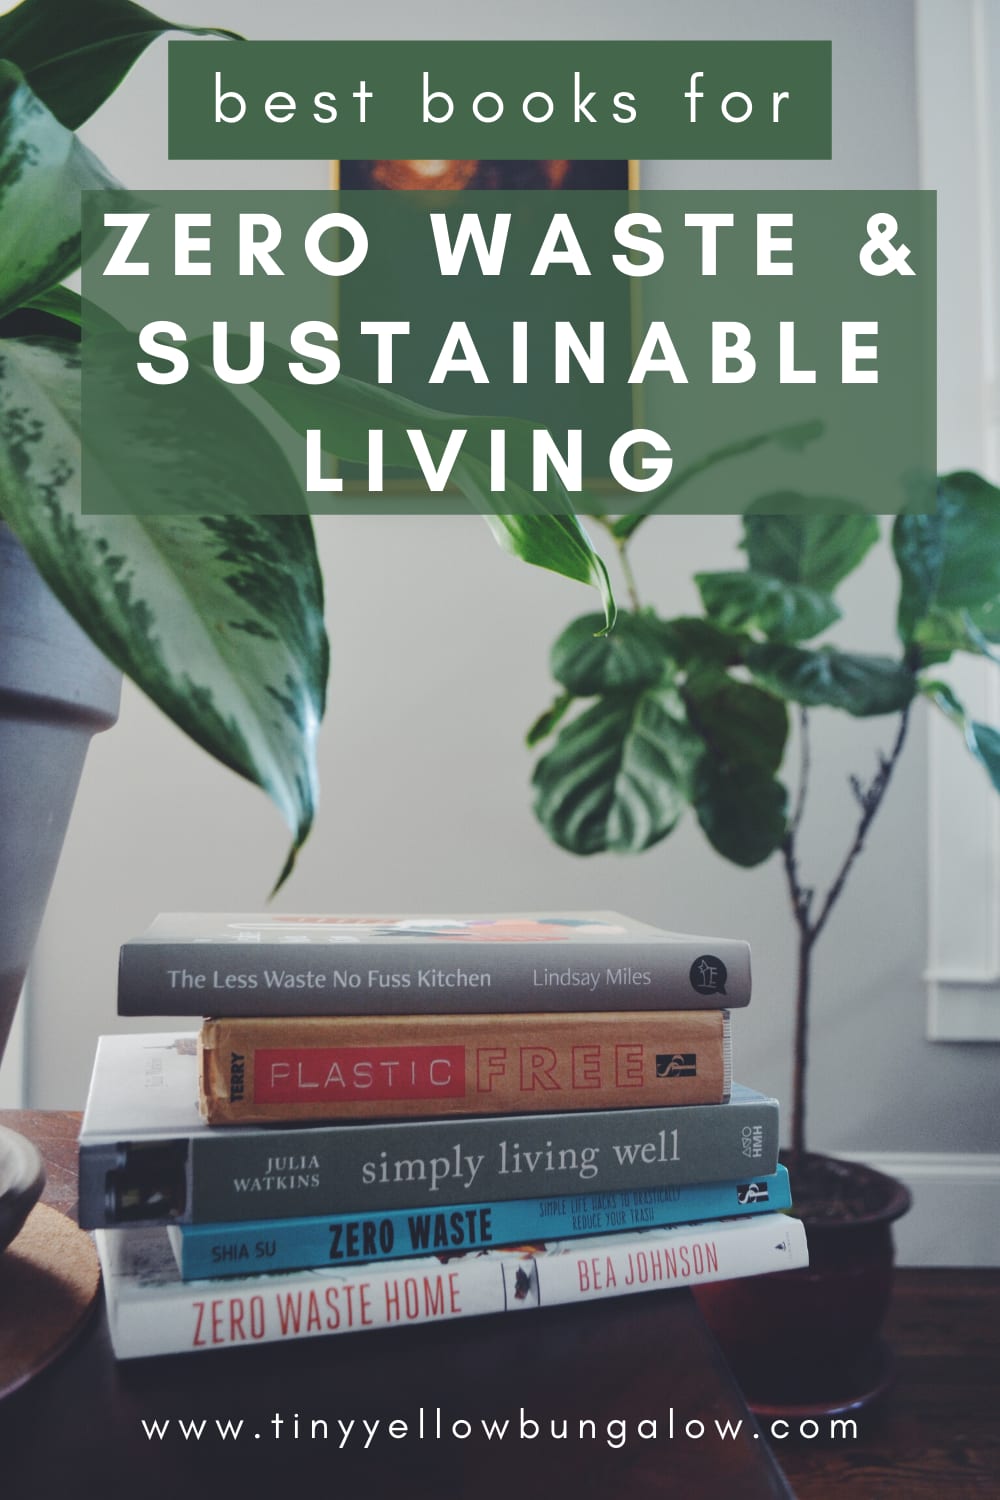 Zero Waste & Sustainability Books